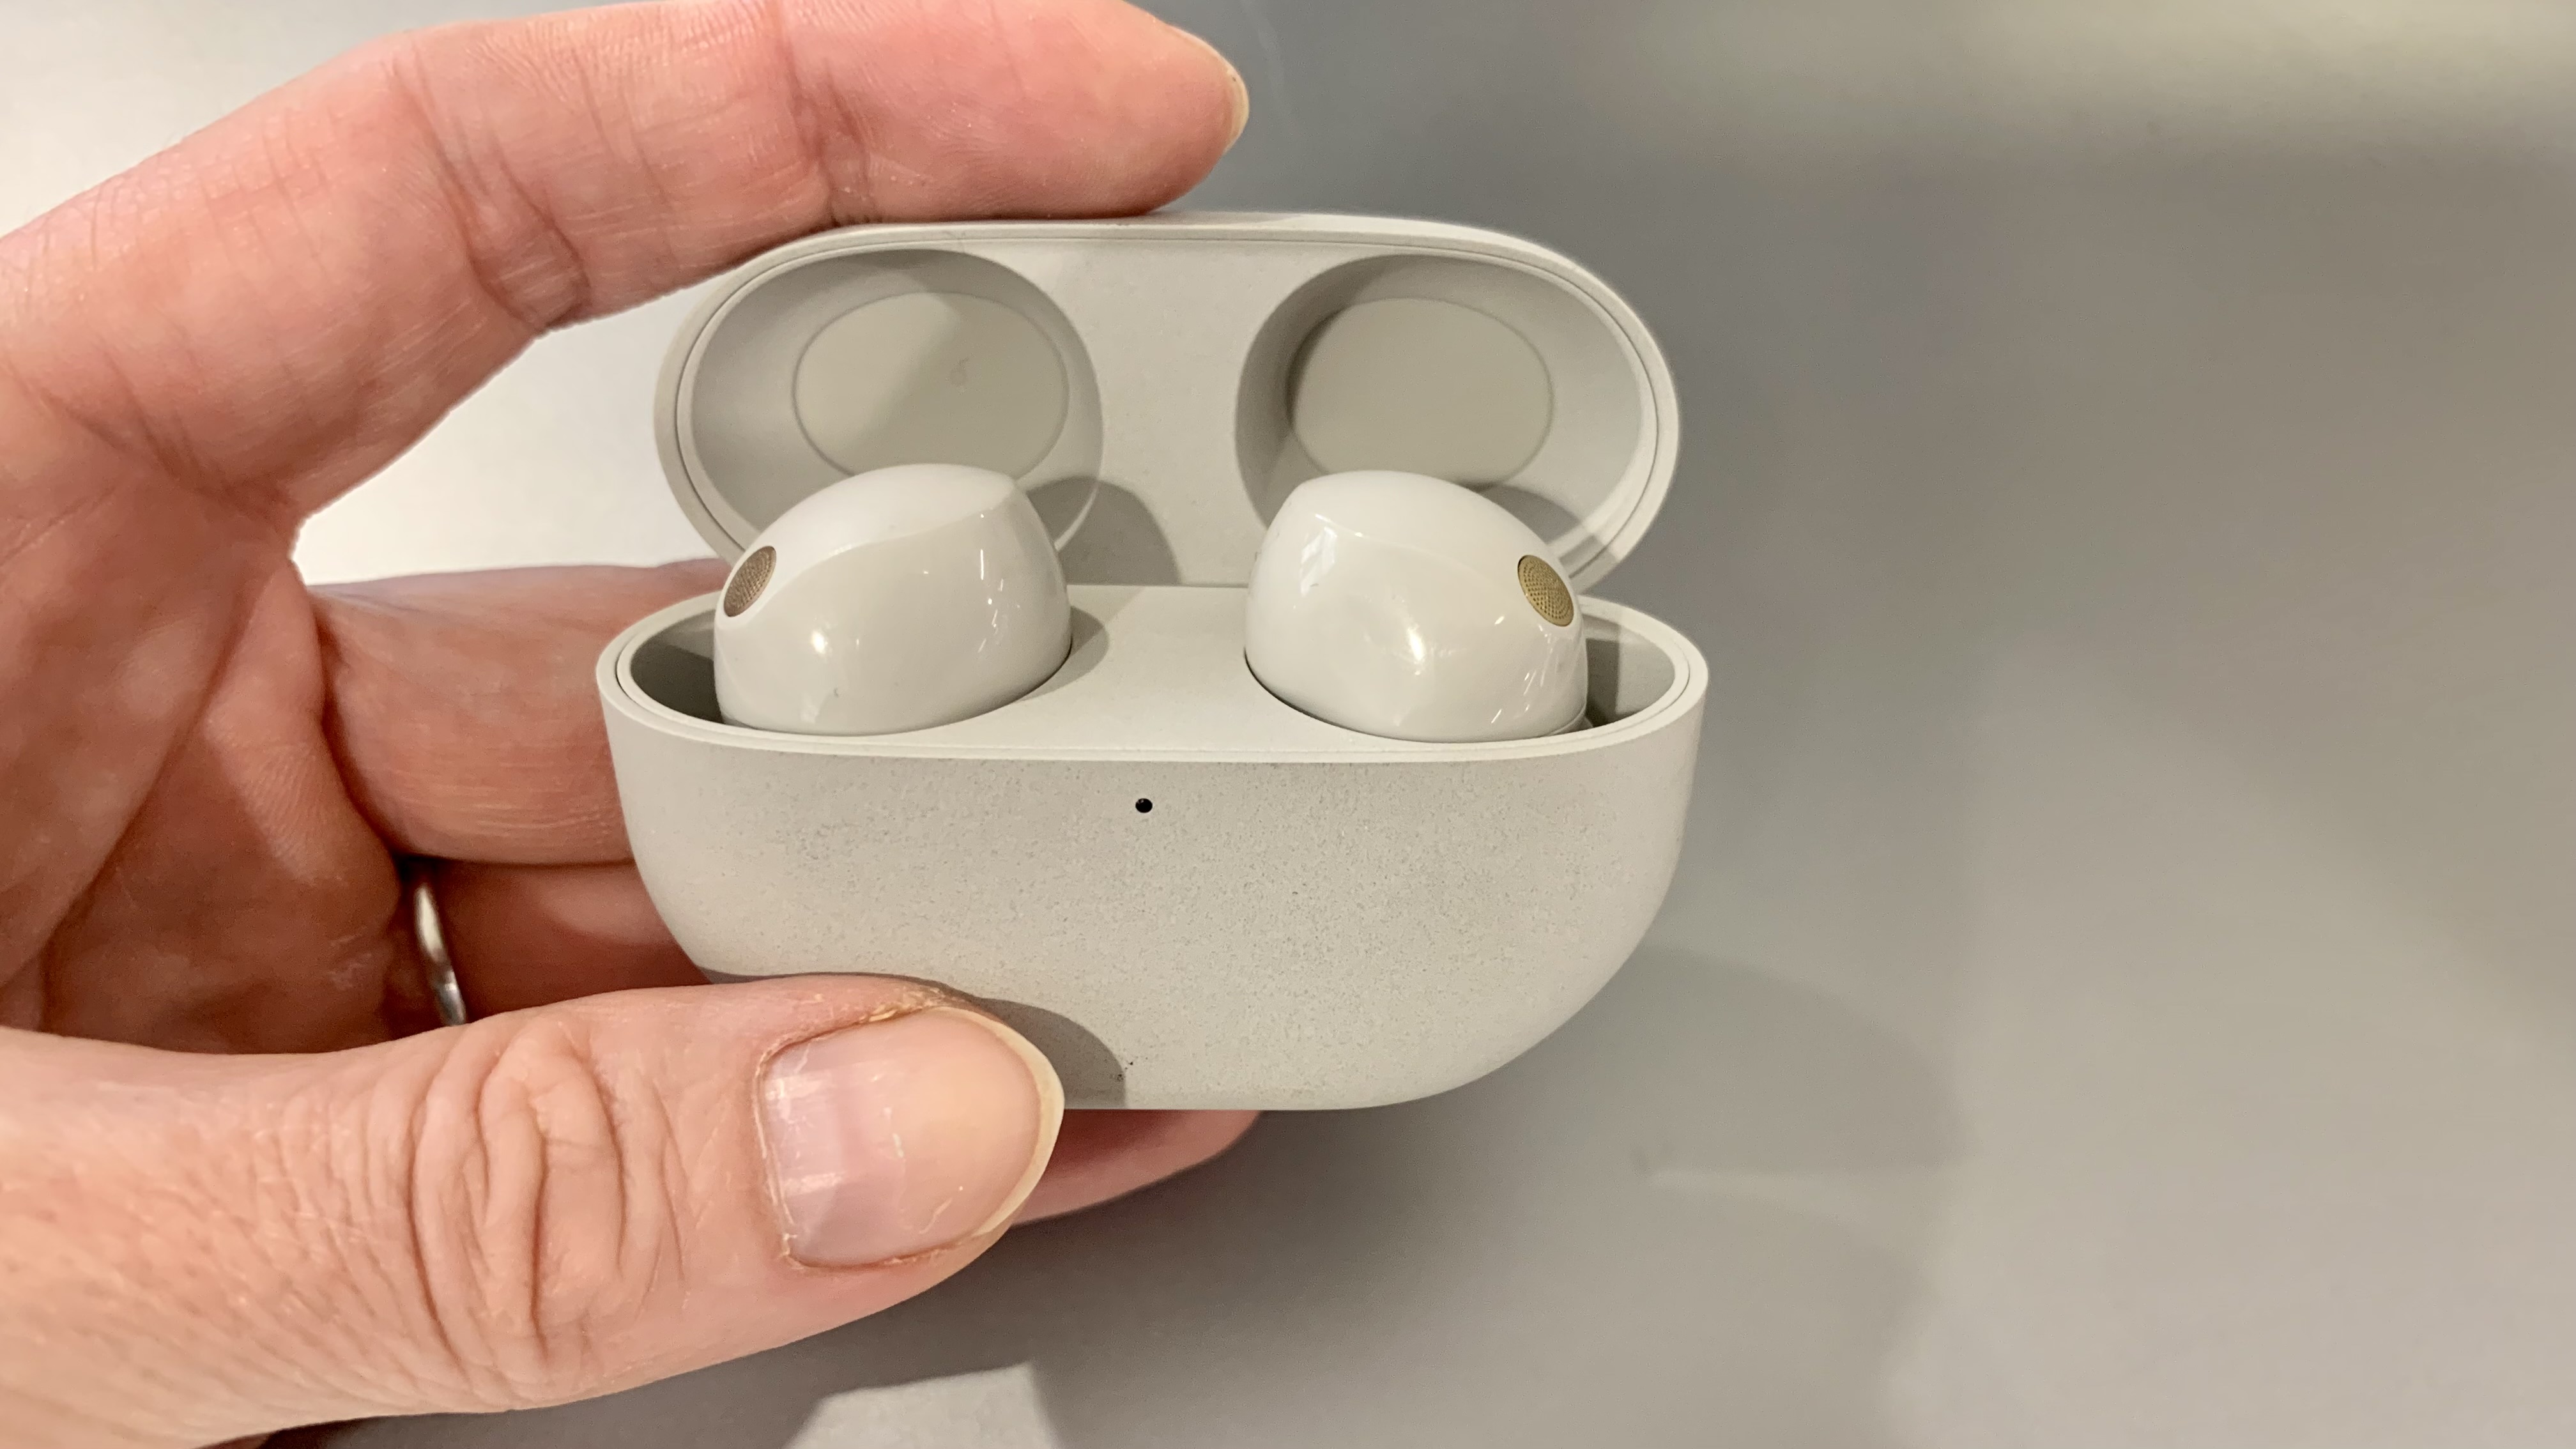 13 trucos para tus AirPods: estrena tus nuevos auriculares de Apple por  todo lo alto